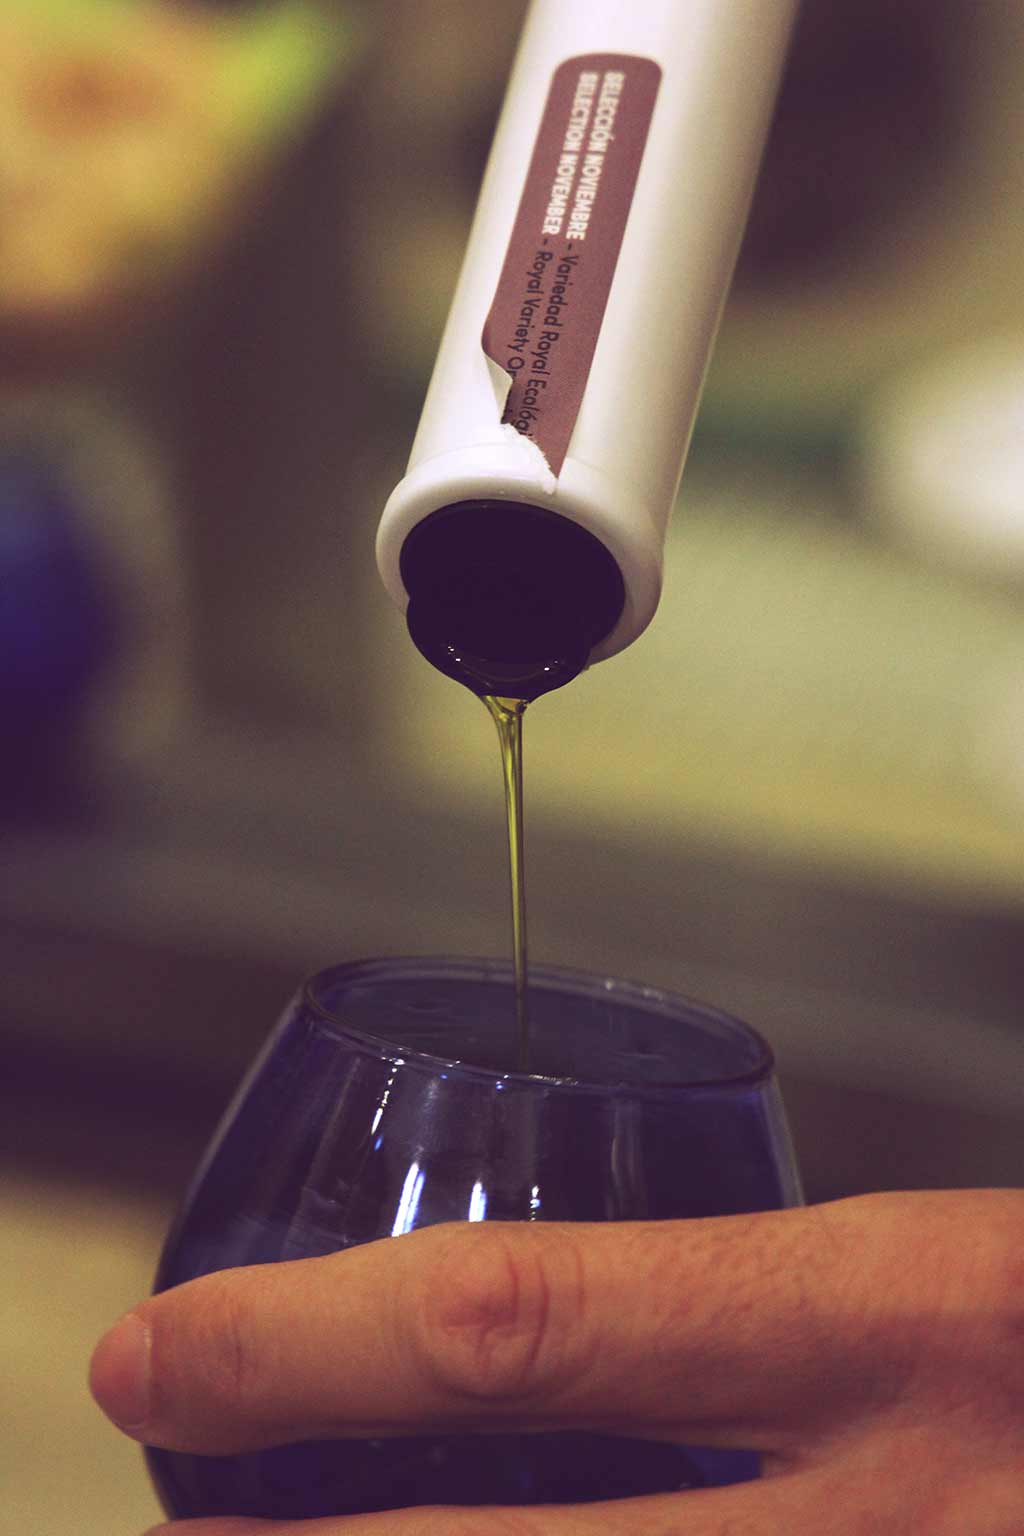 Olivenöl wird aus einer Flasche in ein blaues Glas gegossen